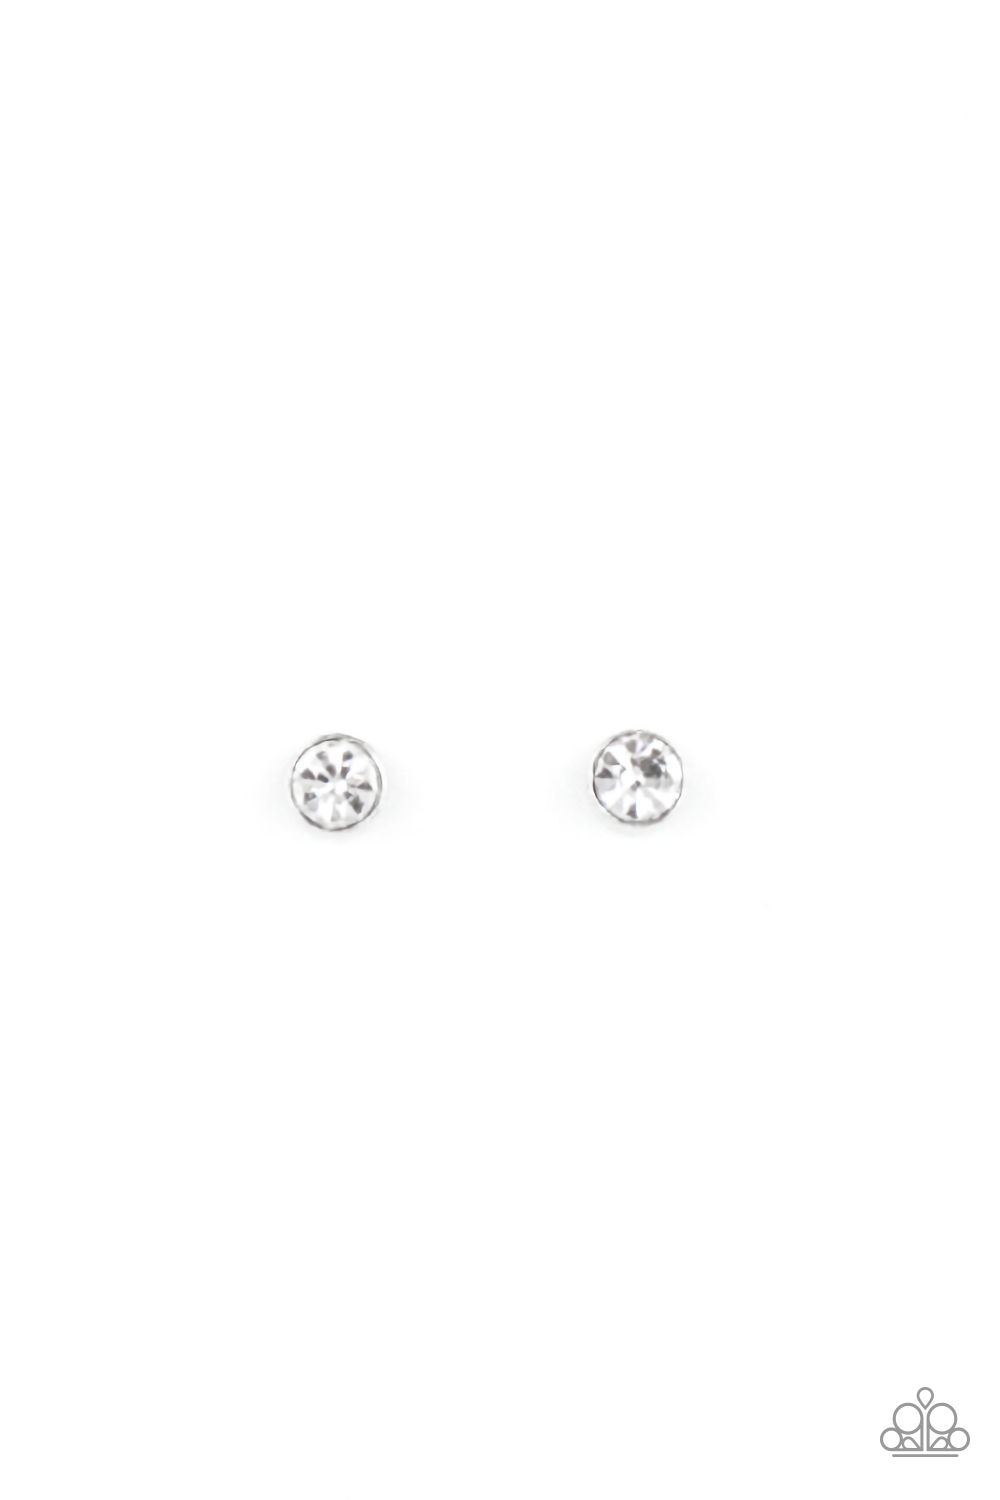 Earring - Starlet Shimmer Slv/Wht Shapes - Round